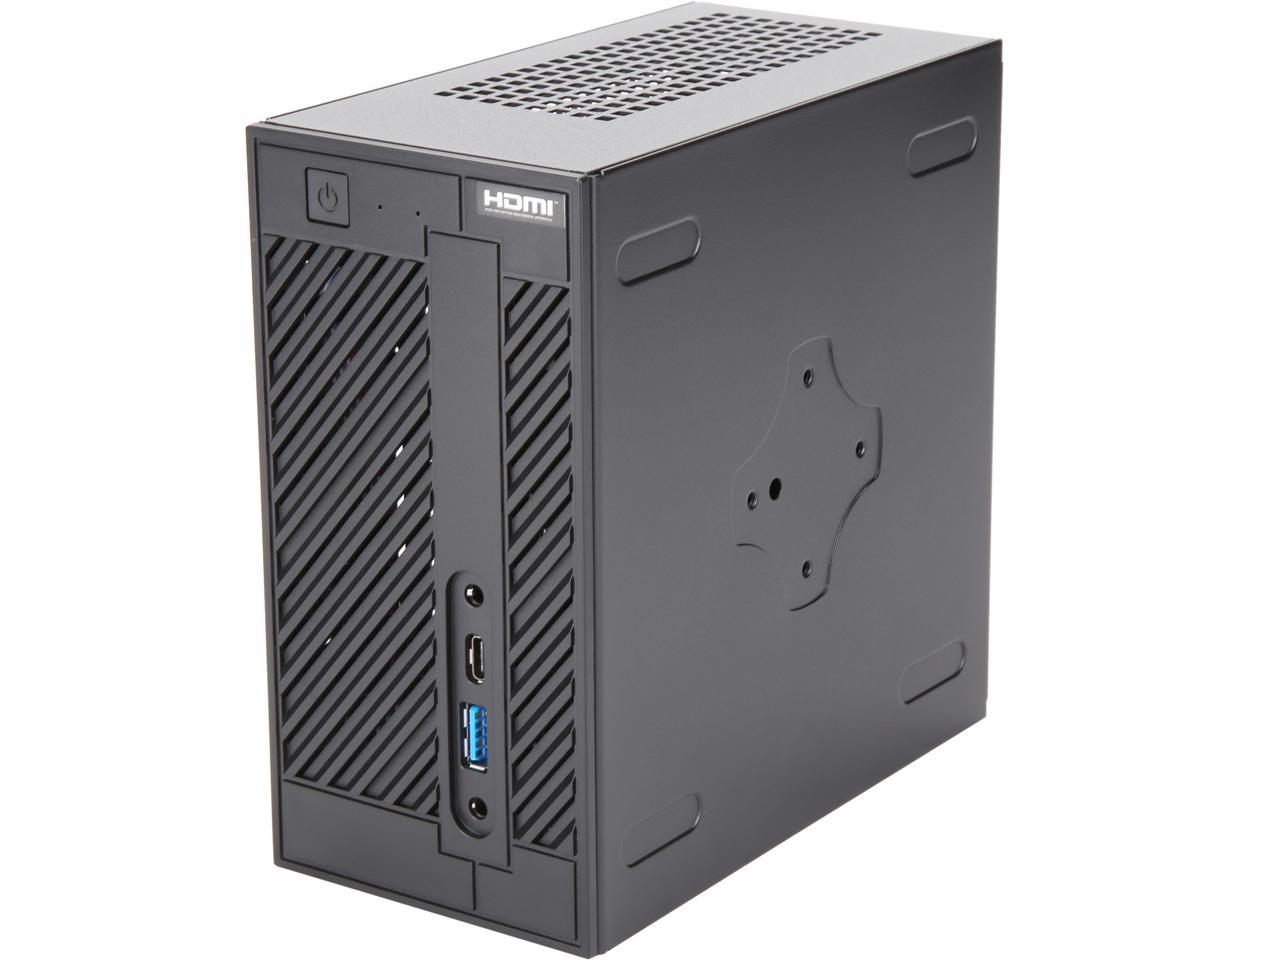 特売オンライン  a300Ryzen5,2400G/16GB/NvmeSSD Deskmini デスクトップ型PC